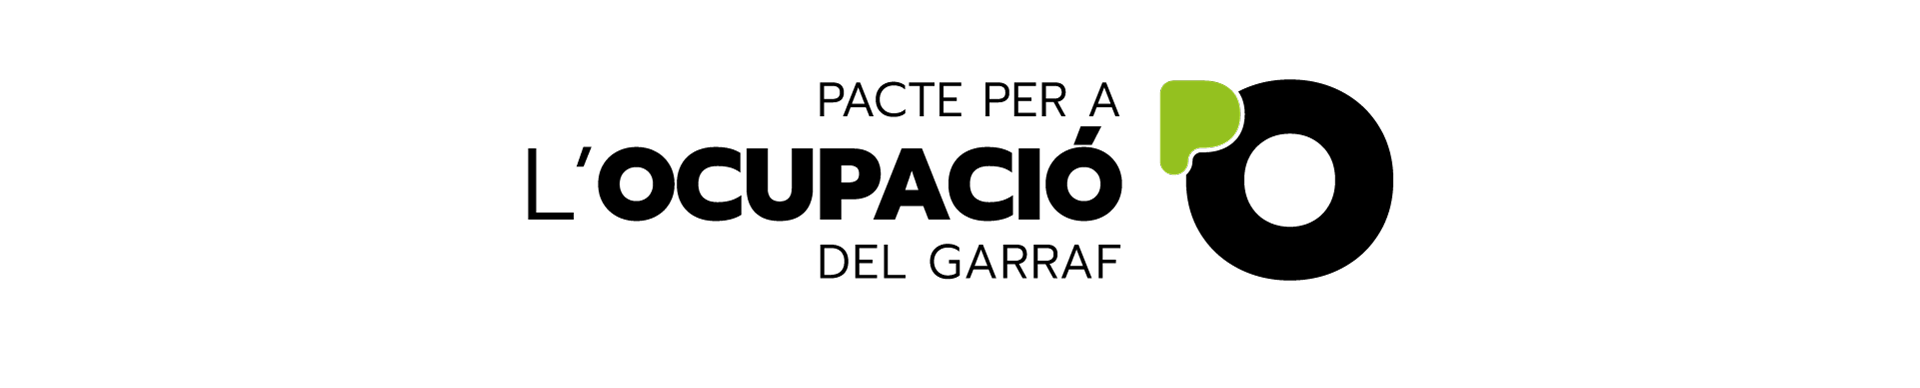 Diseño Gráfico Pacte per l'Ocupació del Garraf Logotipo